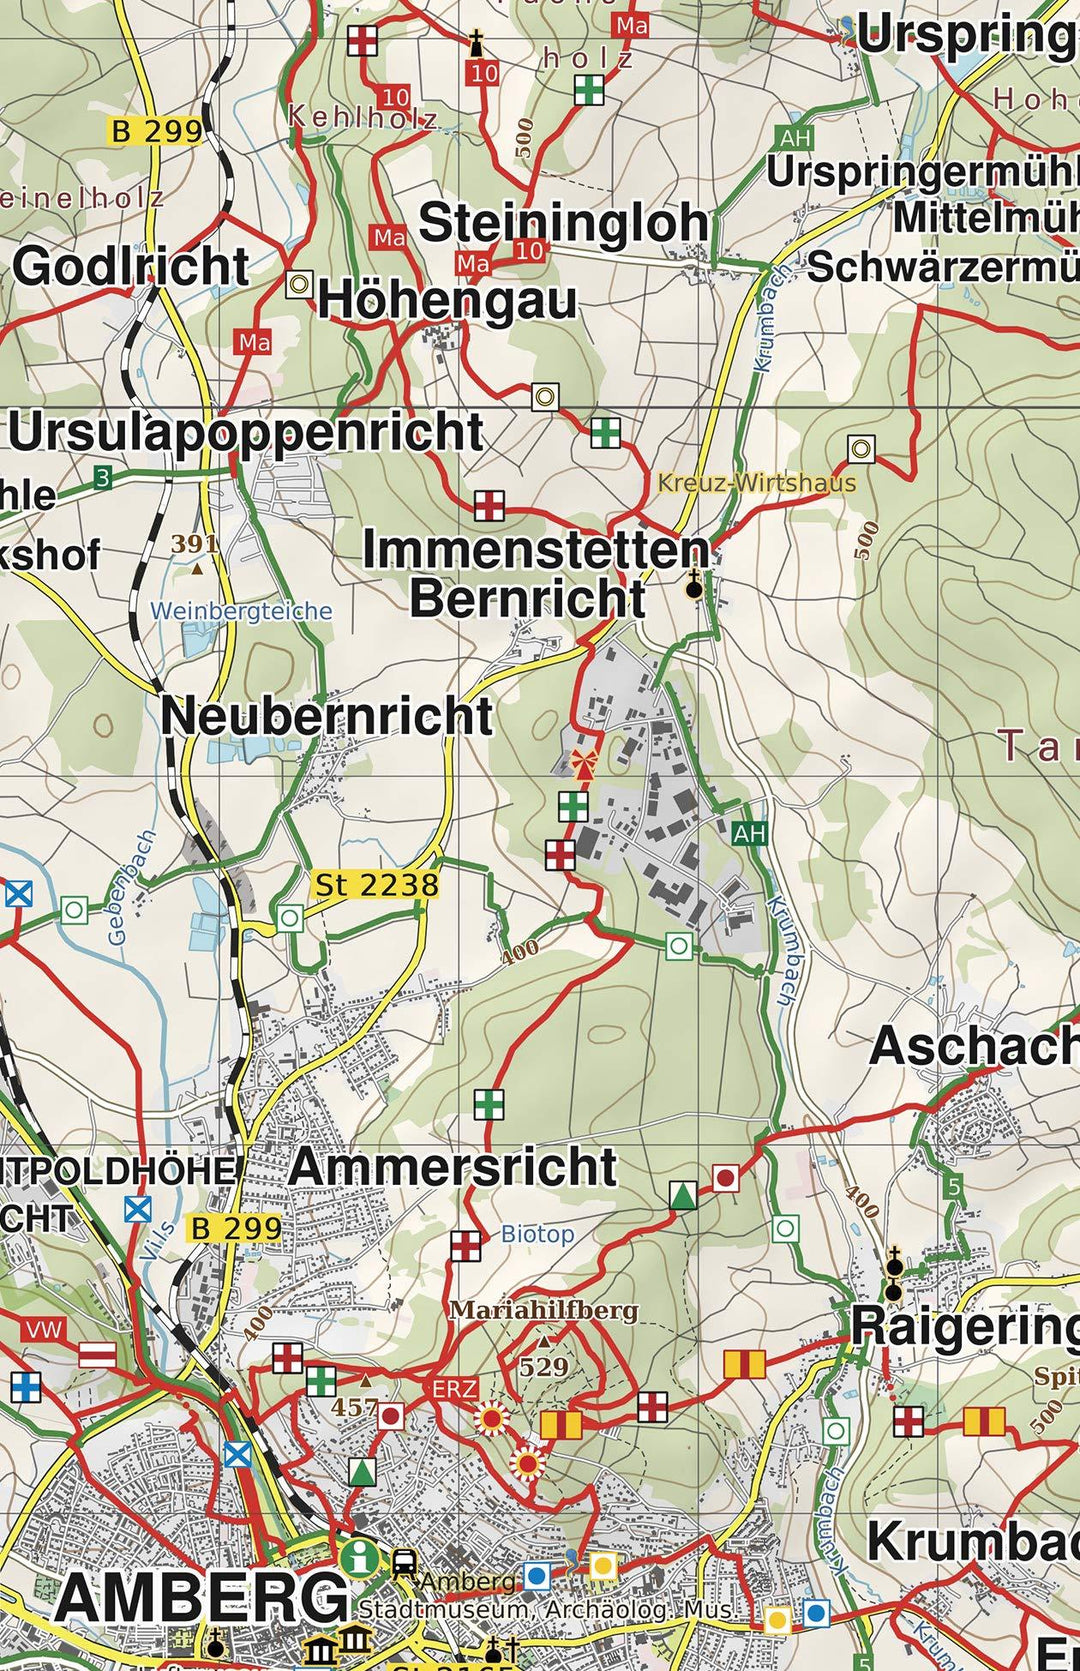 Carte de randonnée - Südwestliche Oberpfalz, Neumarkt n° 177 | PhoneMaps carte pliée PhoneMaps 